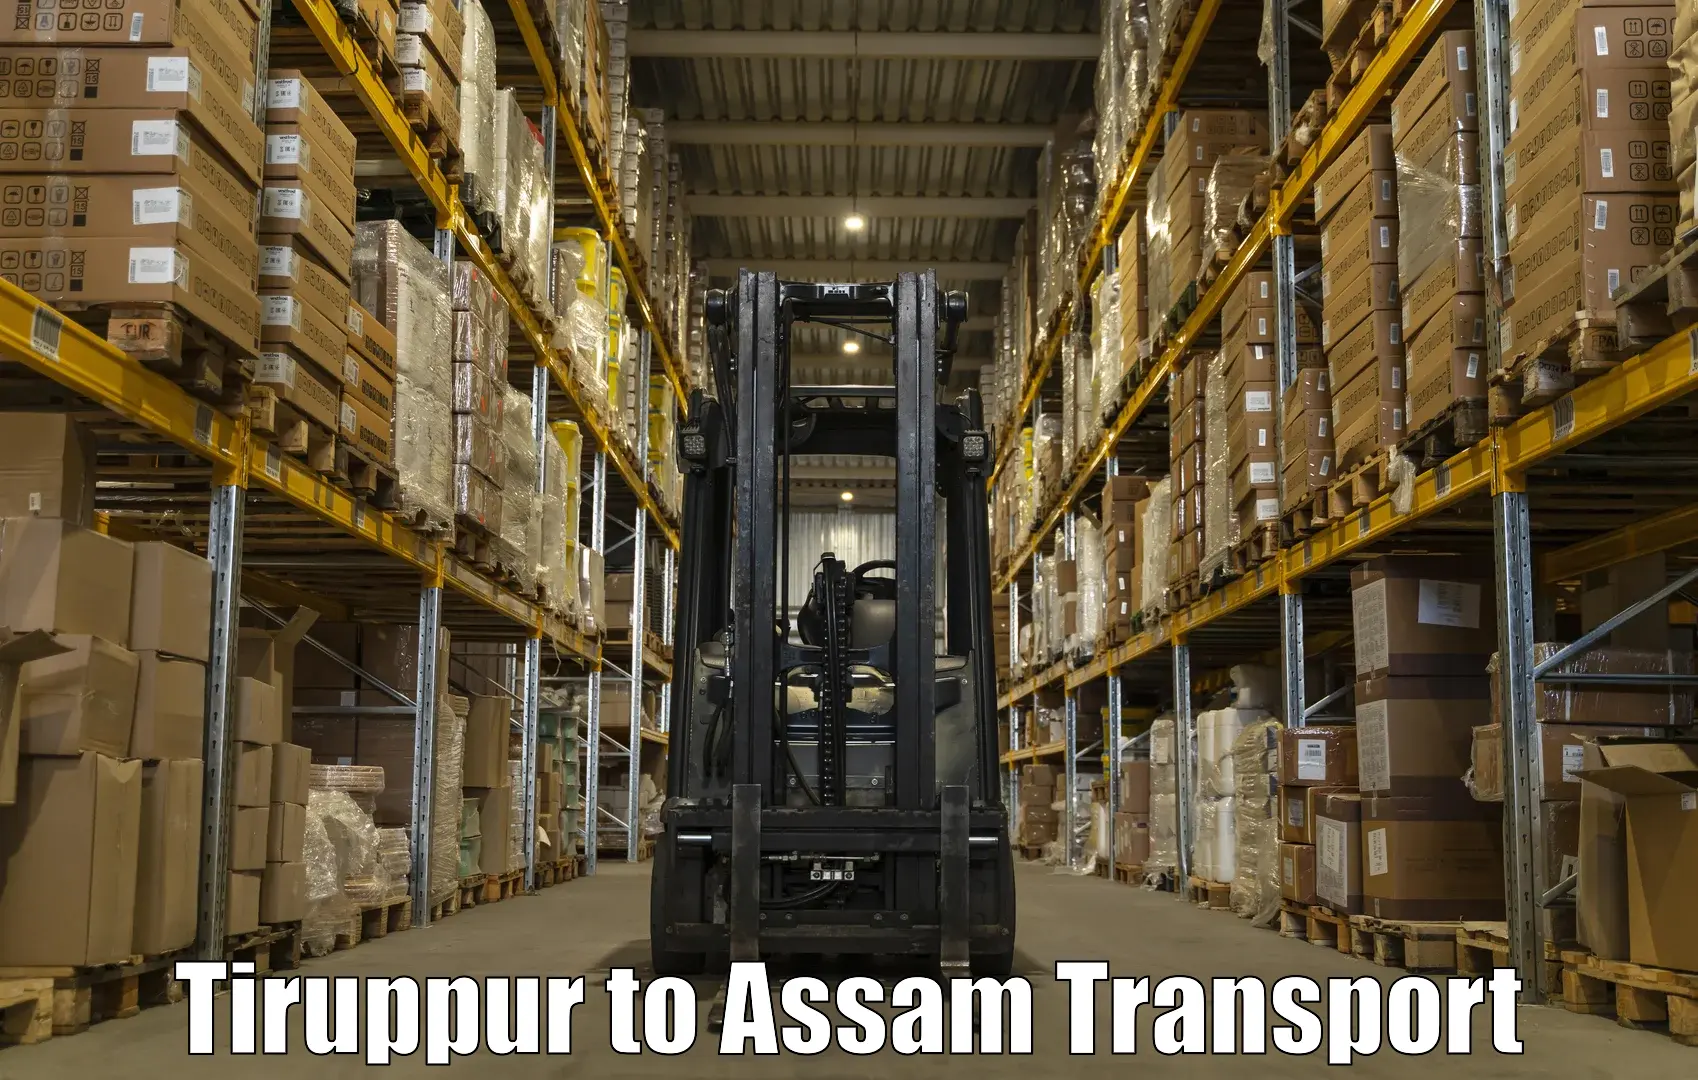 Furniture transport service Tiruppur to Khetri